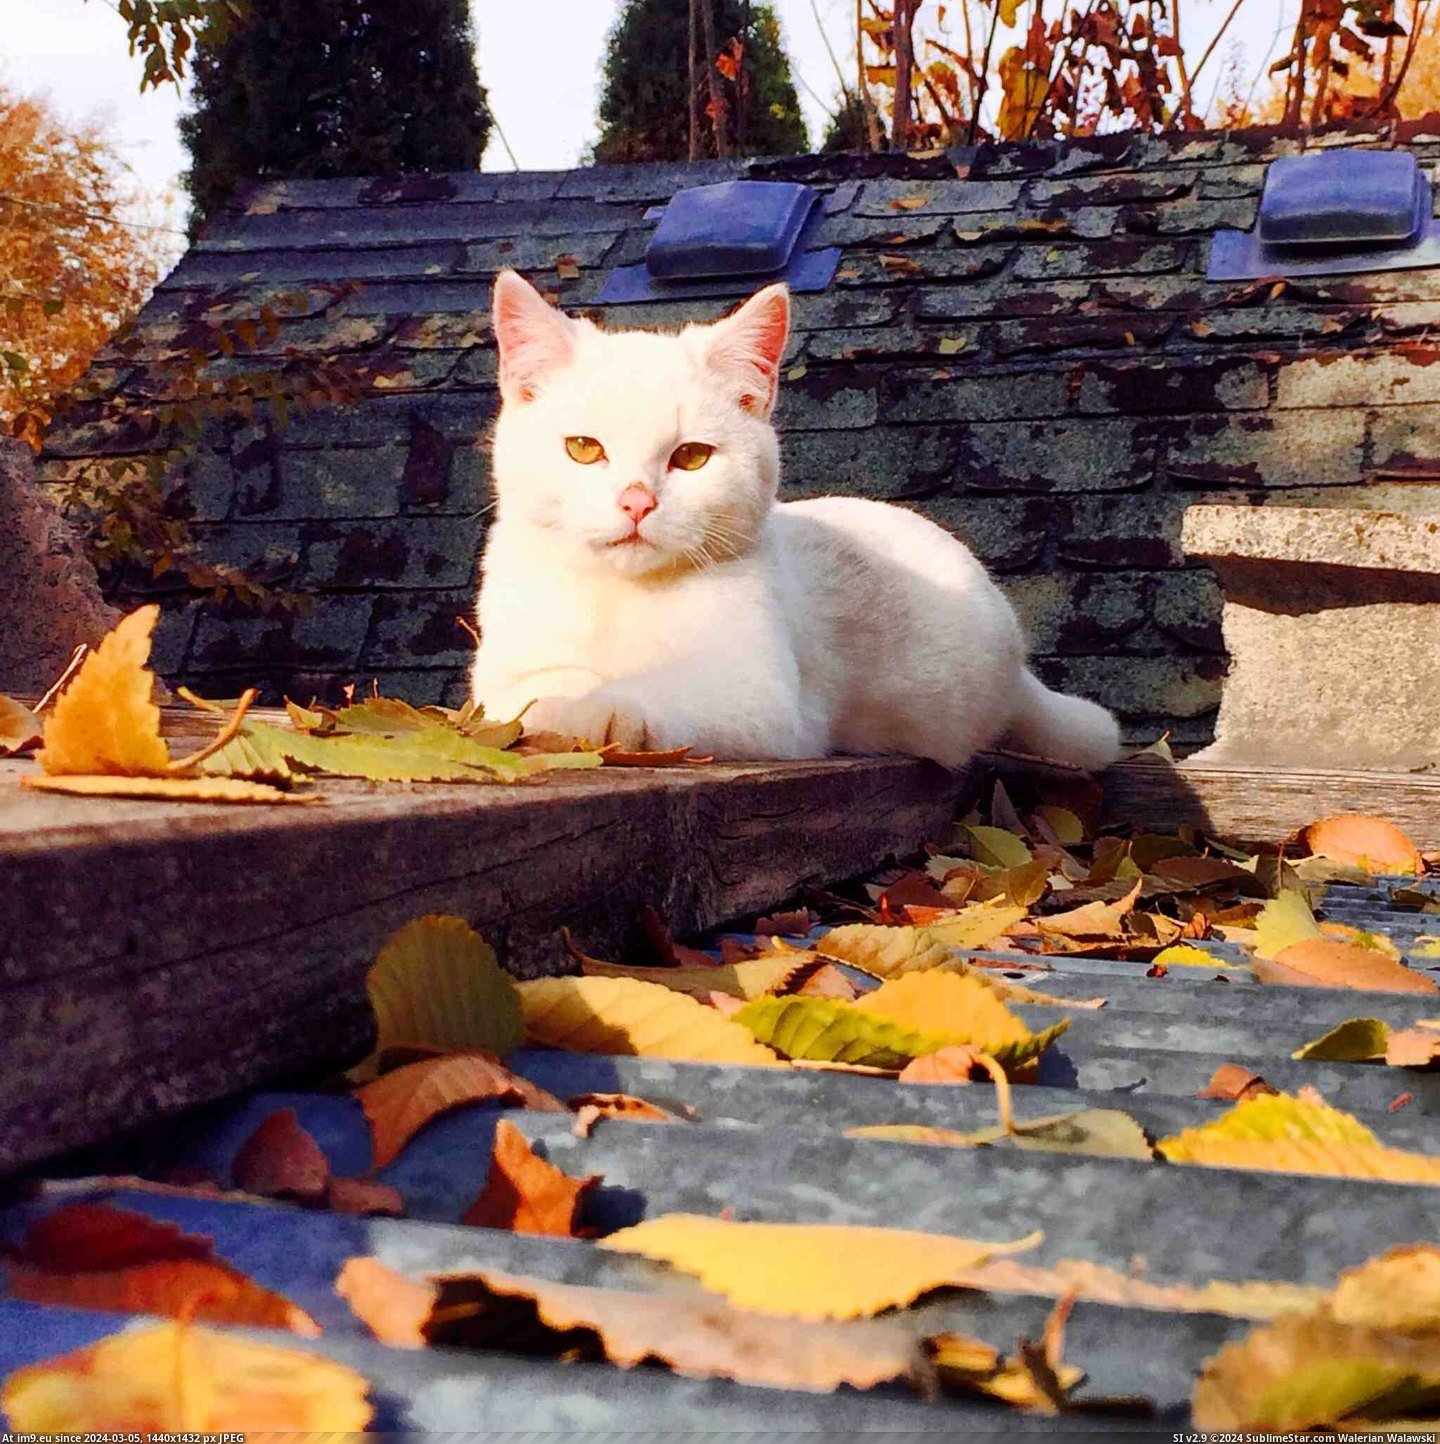 #One #Friends #Photogenic #Cat [Aww] My friends cat is a photogenic one. Pic. (Obraz z album My r/AWW favs))